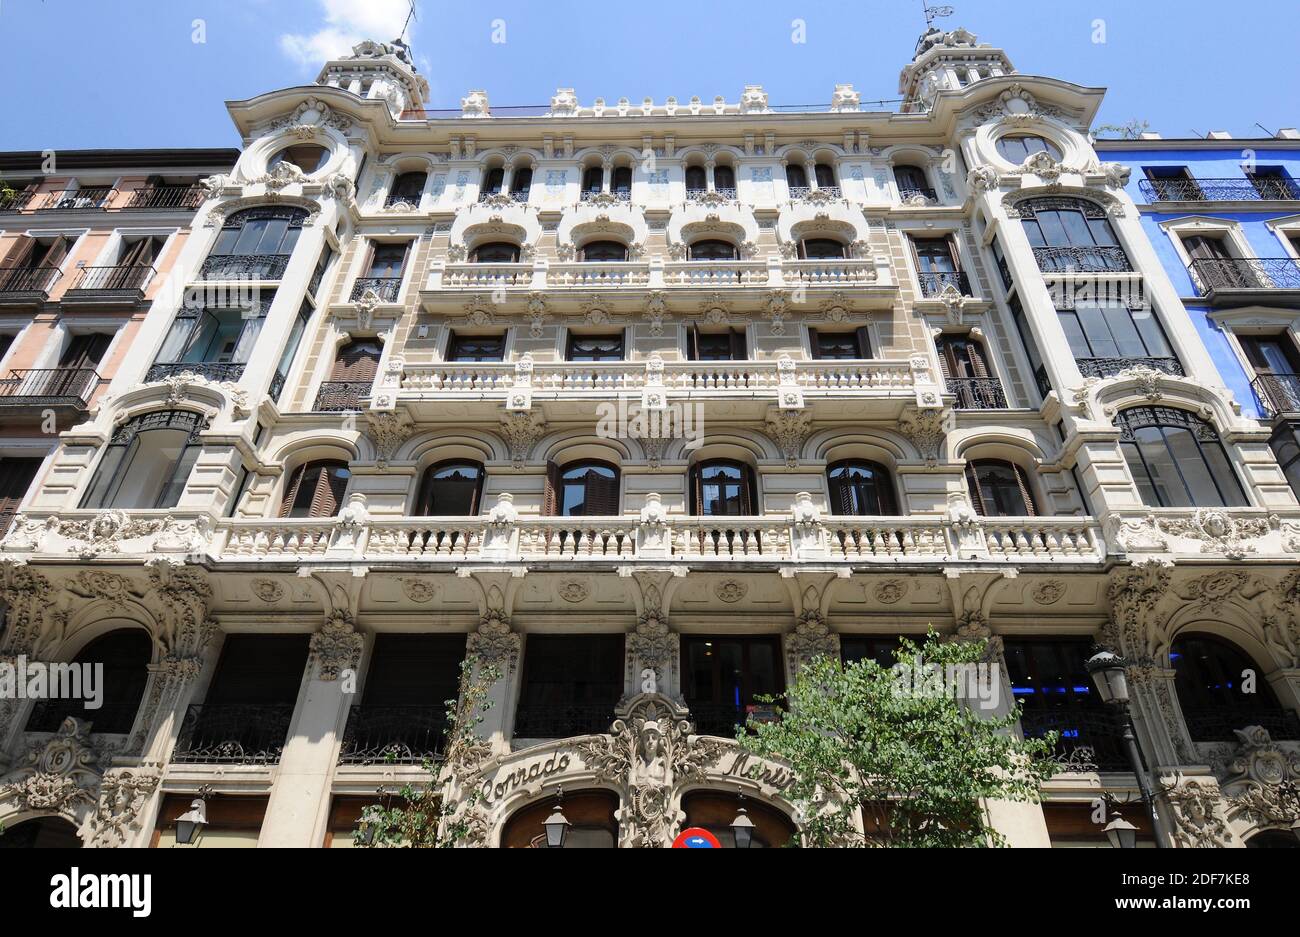 Edificio de la Compañia Colonial or Edificio Conrado Martin. Madrid city, Spain. Stock Photo